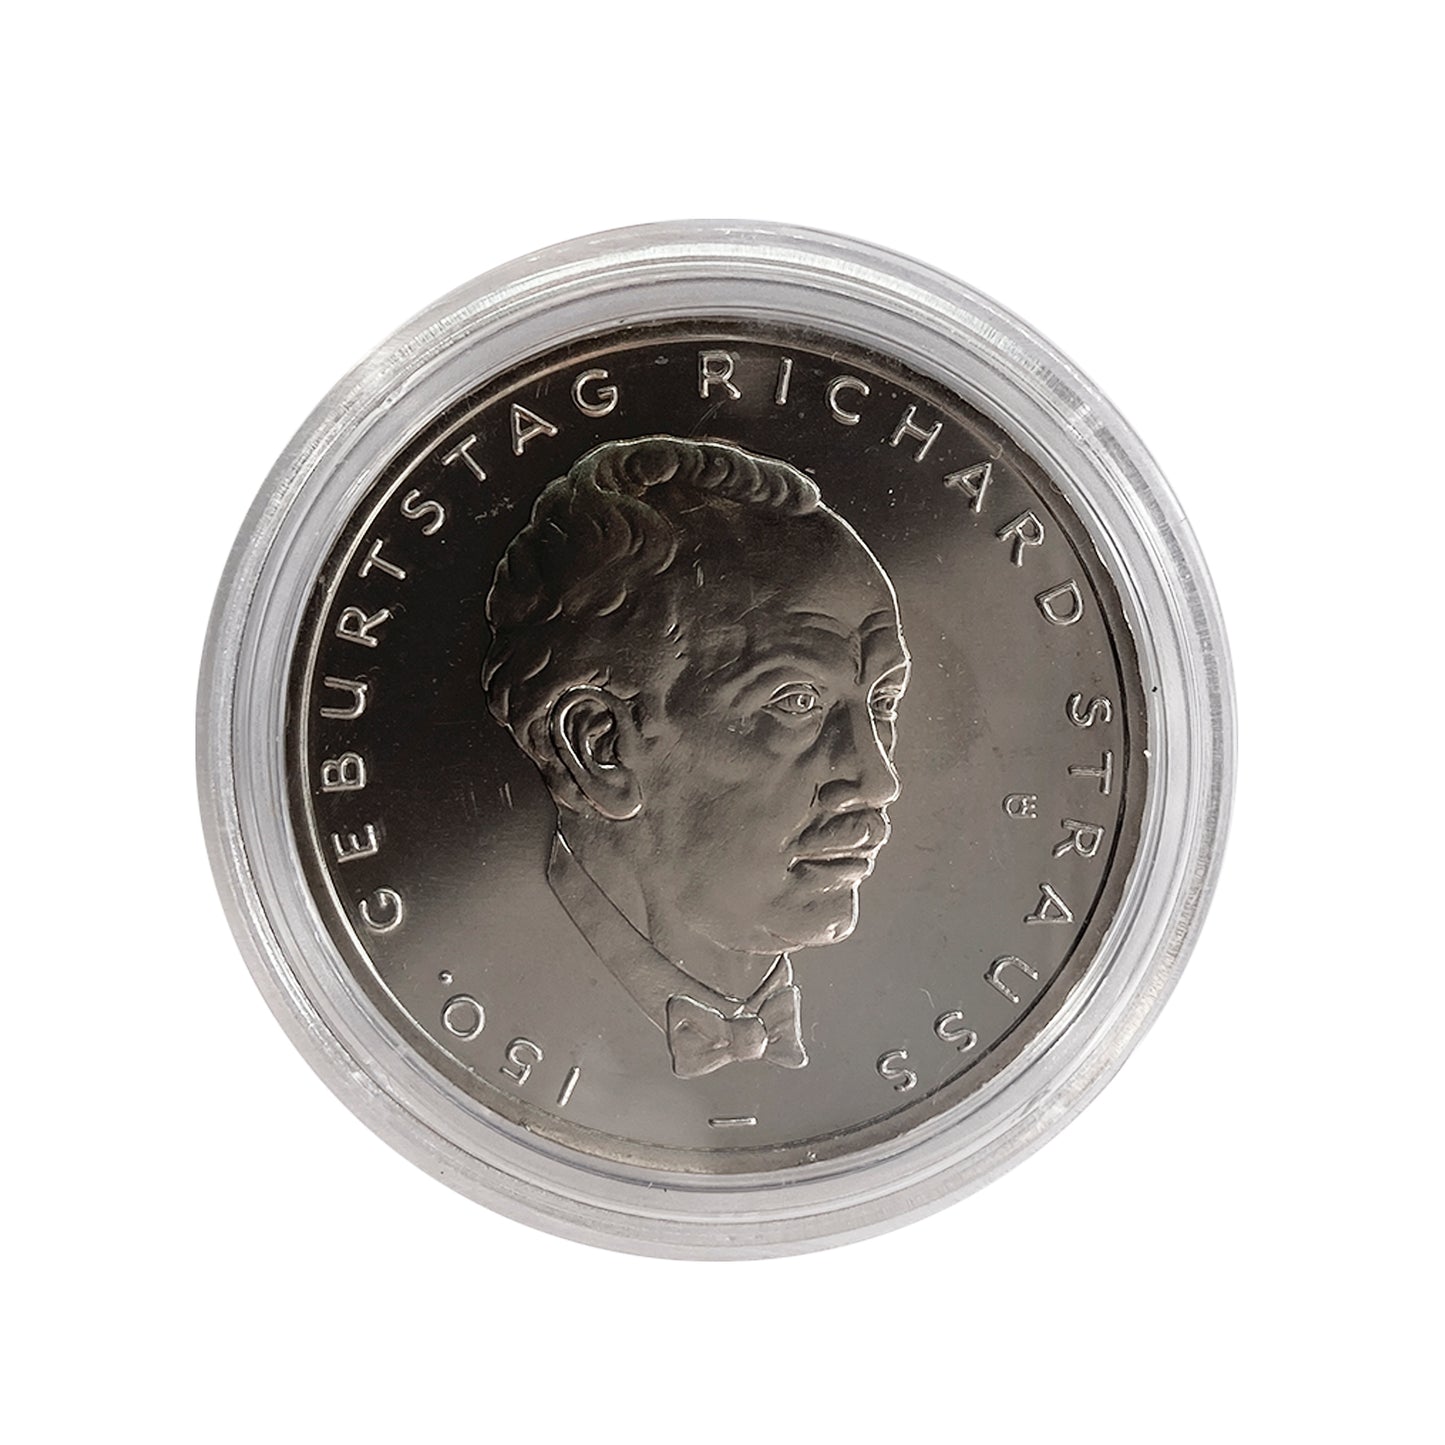 Alemania - Moneda 10 euros cuproníquel 2014 - 150 Aniversario del nacimiento de Richard Strauss